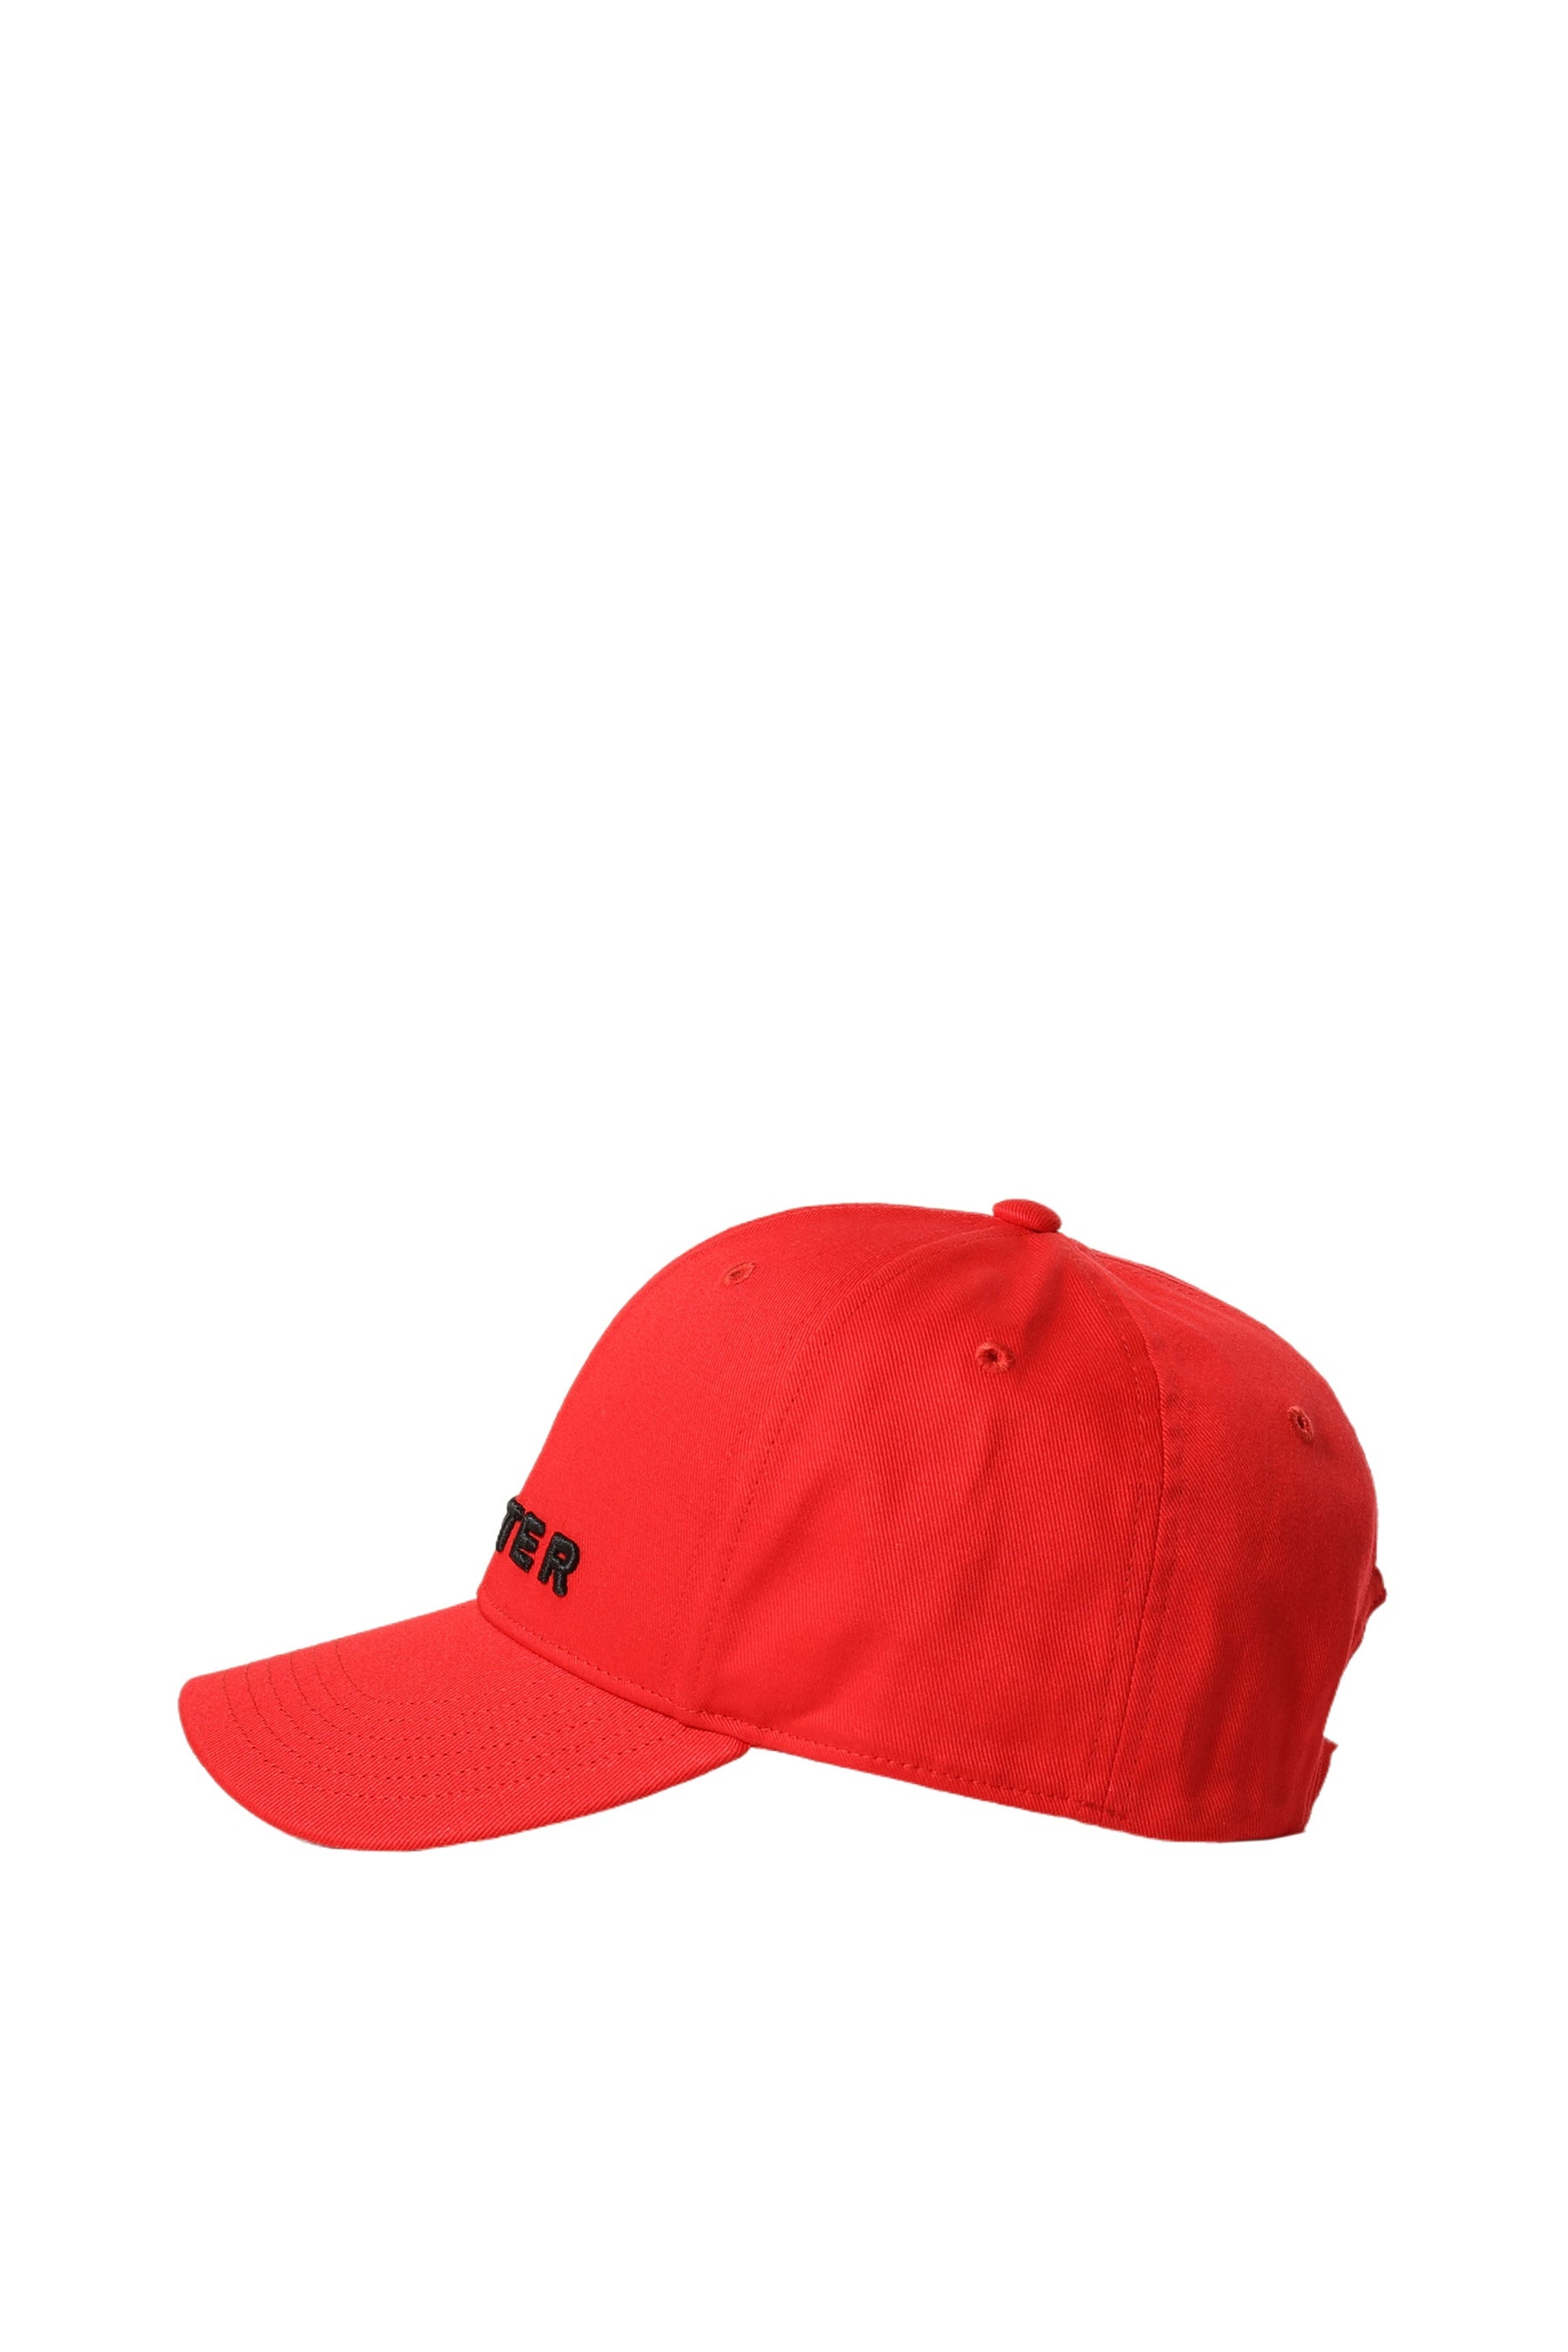 CLASSIC CAP / RED - 3